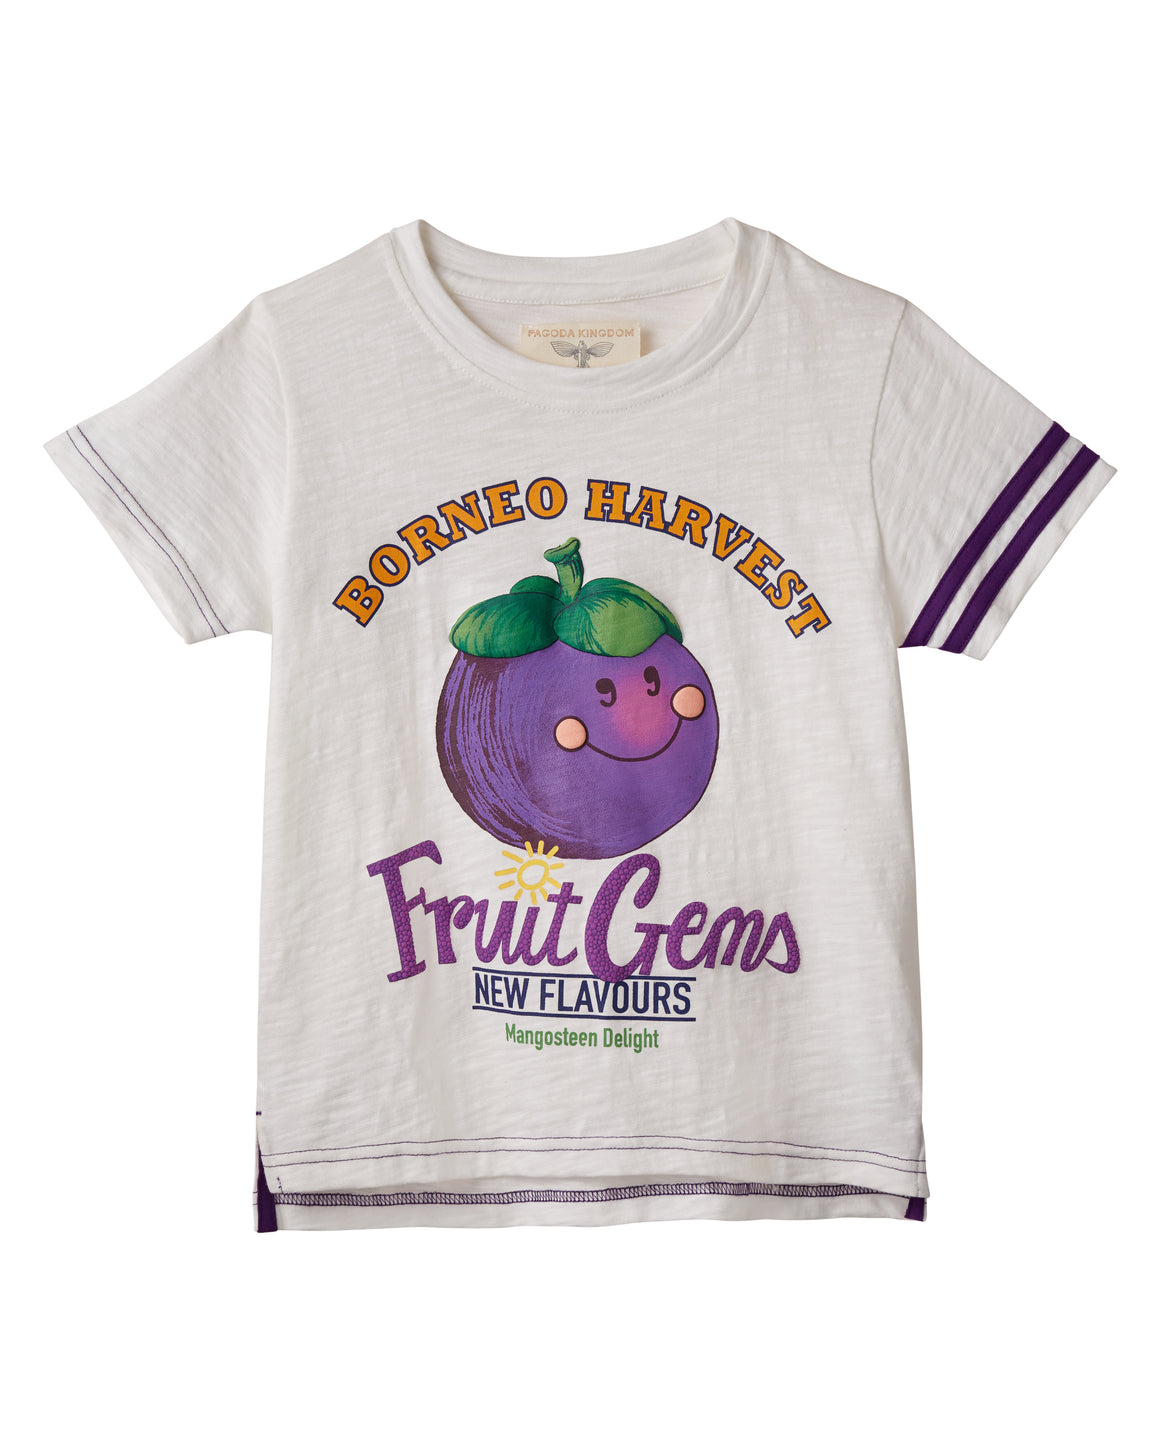 Fruit Gems T-Shirt - Mangosteen